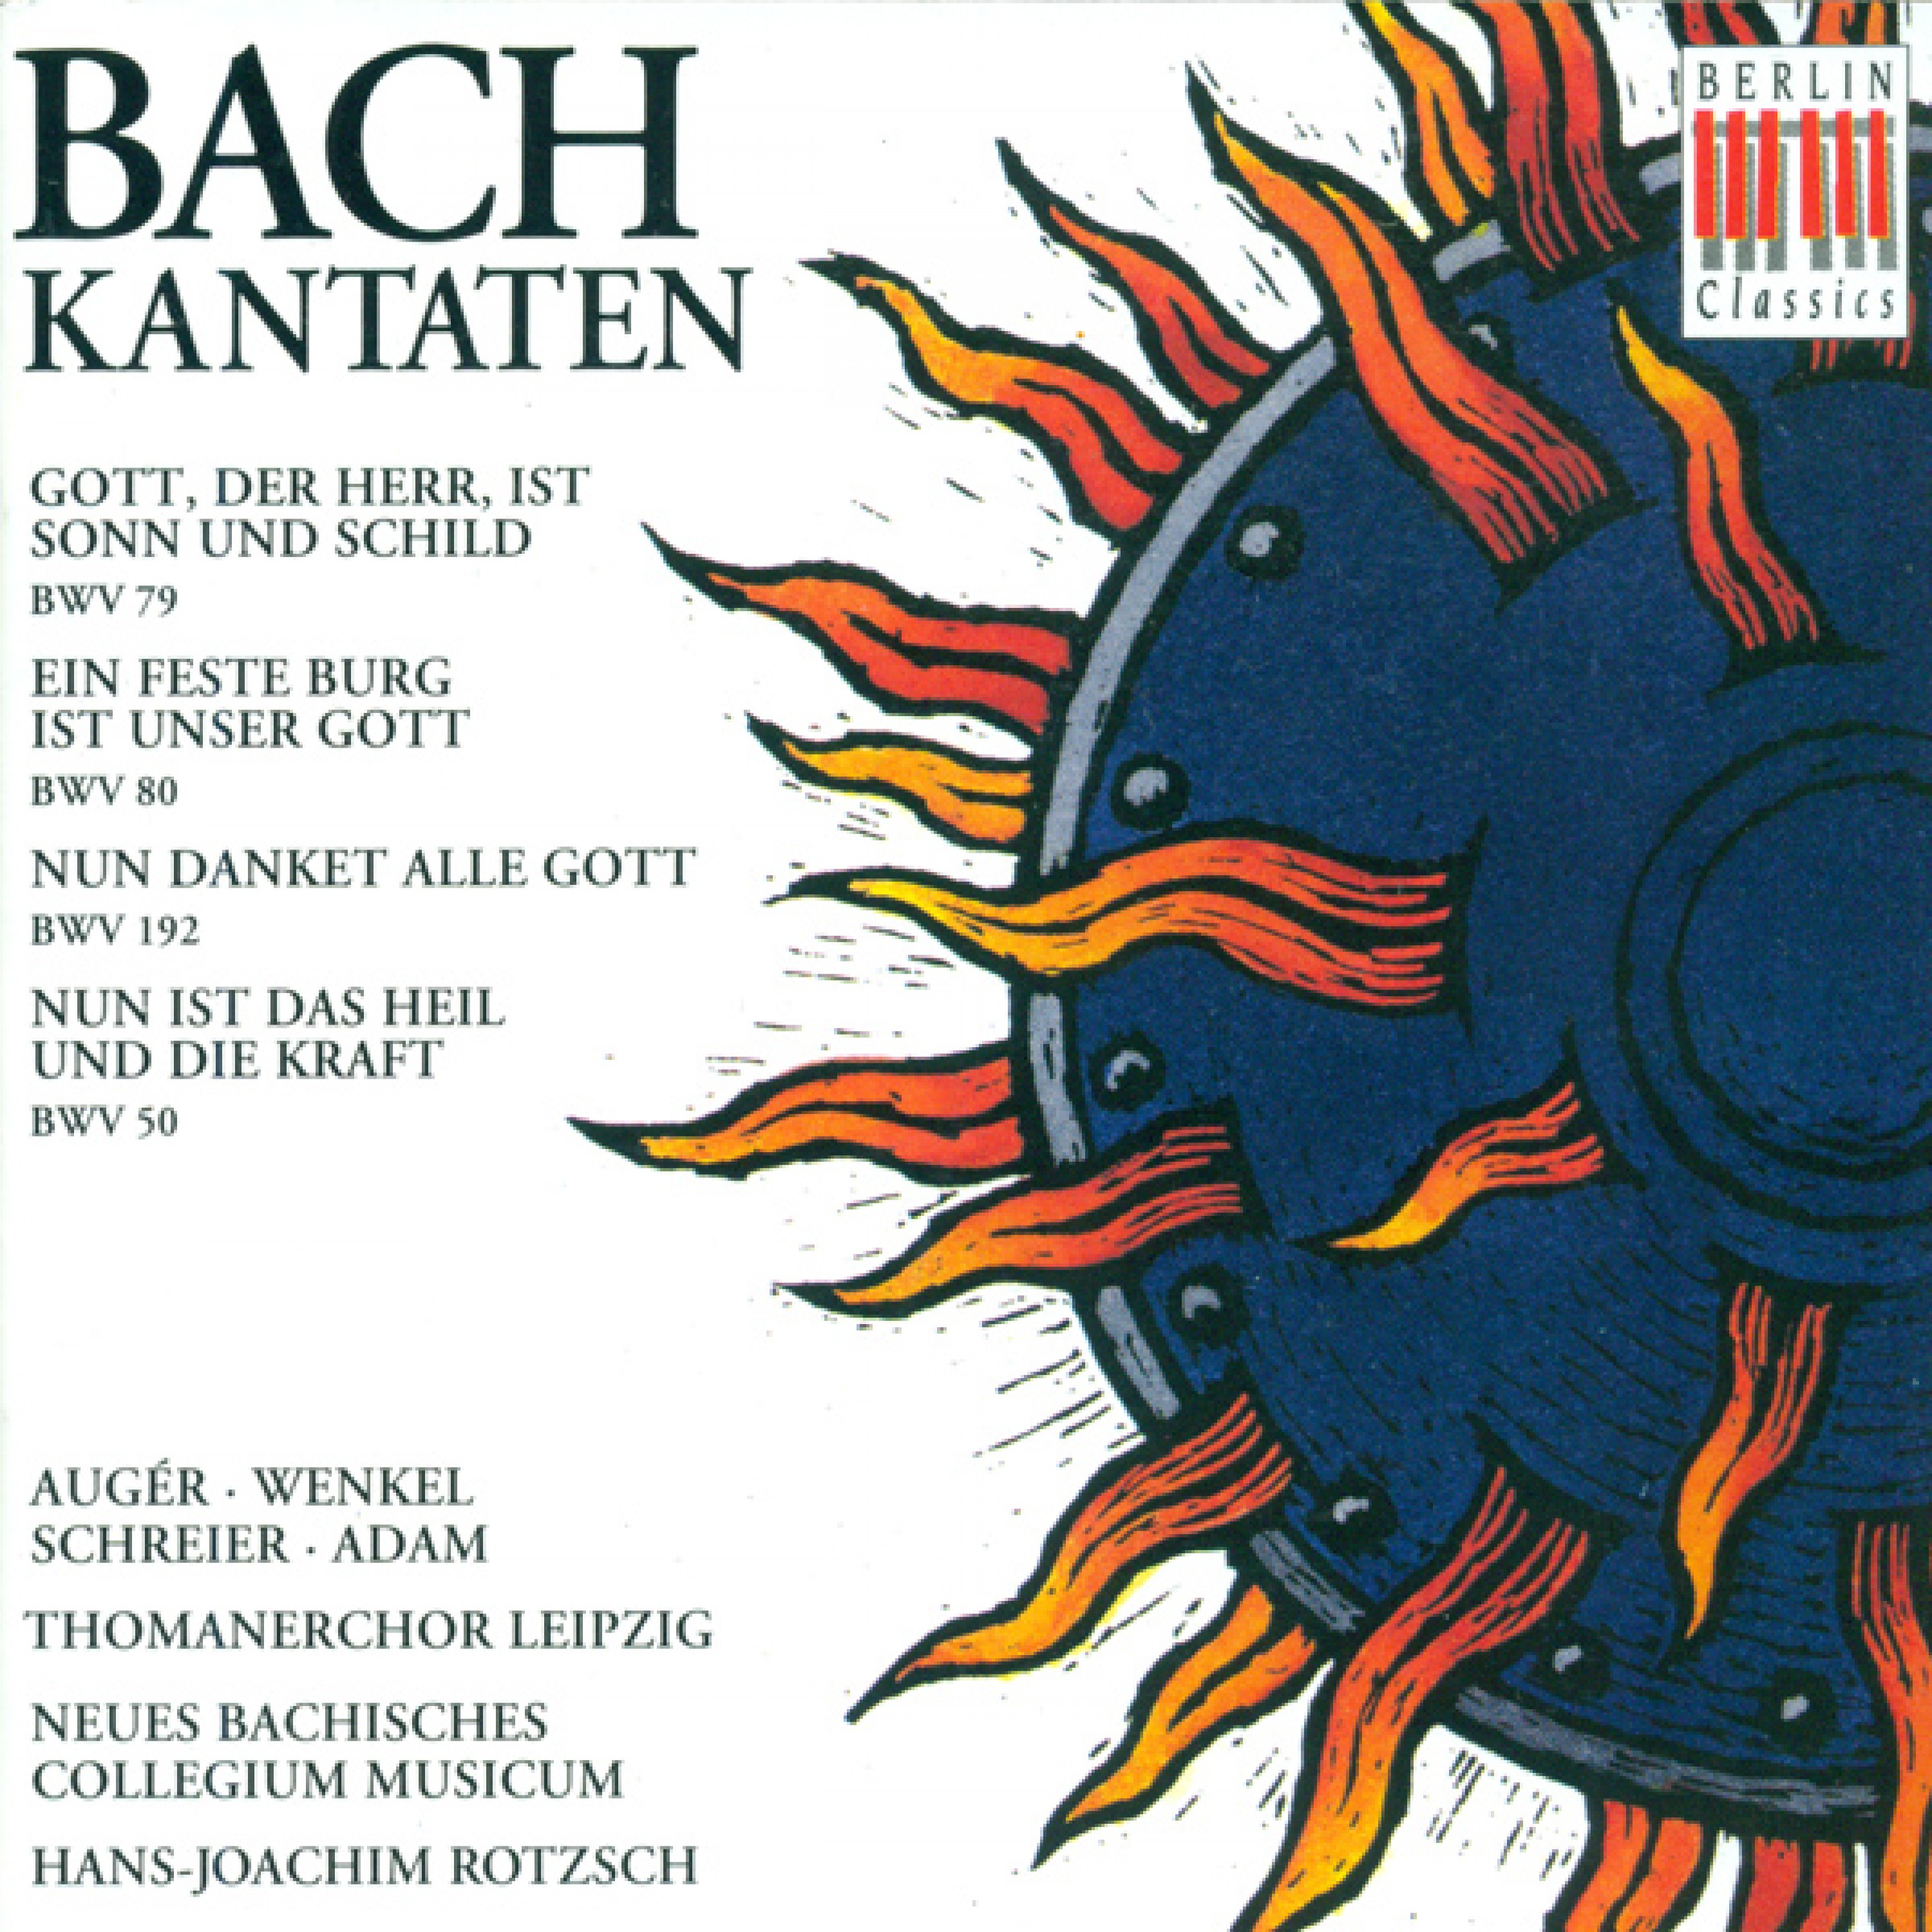 Nun danket alle Gott, BWV 192: Lob, Ehr und Preis sei Gott (Chorus)